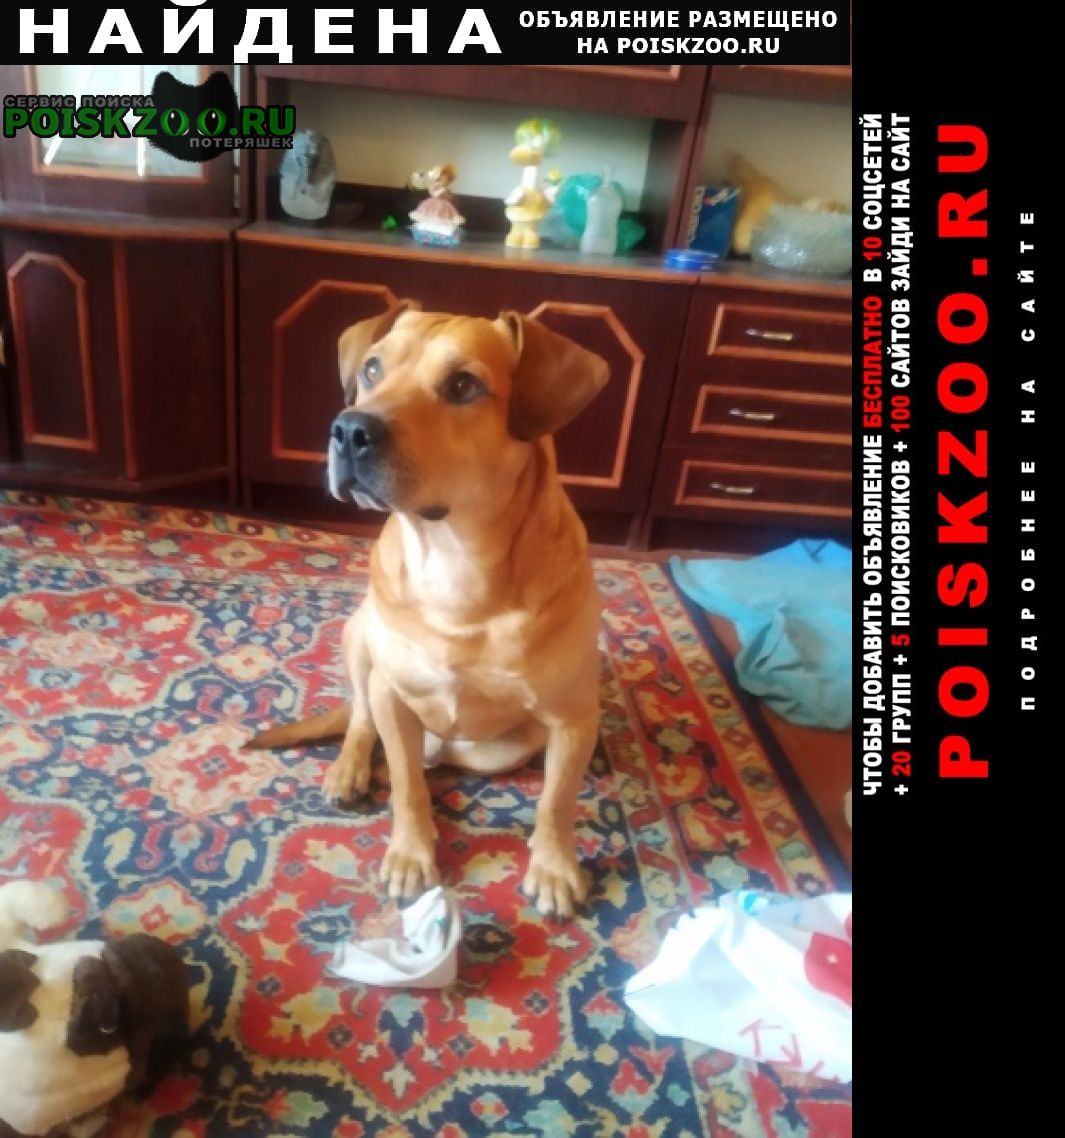 Найдена собака кобель стафордширский бультерьер Калининград (Кенигсберг)